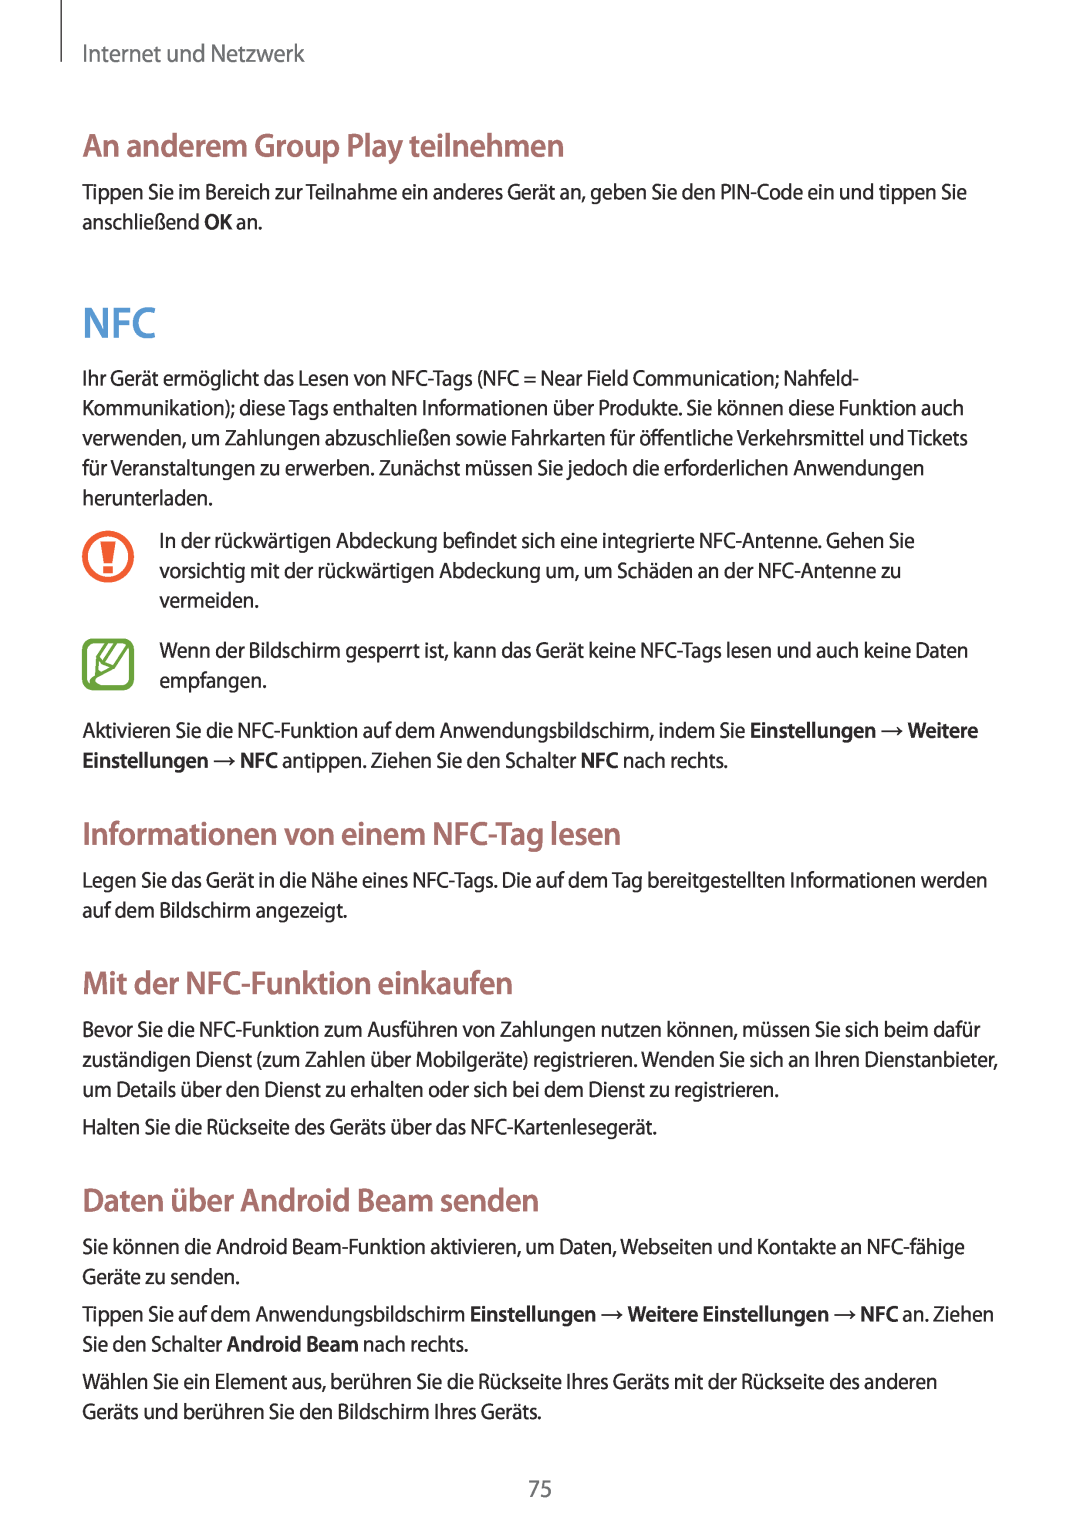 Samsung GT-N7100ZBDTUR An anderem Group Play teilnehmen, Informationen von einem NFC-Tag lesen, Internet und Netzwerk 